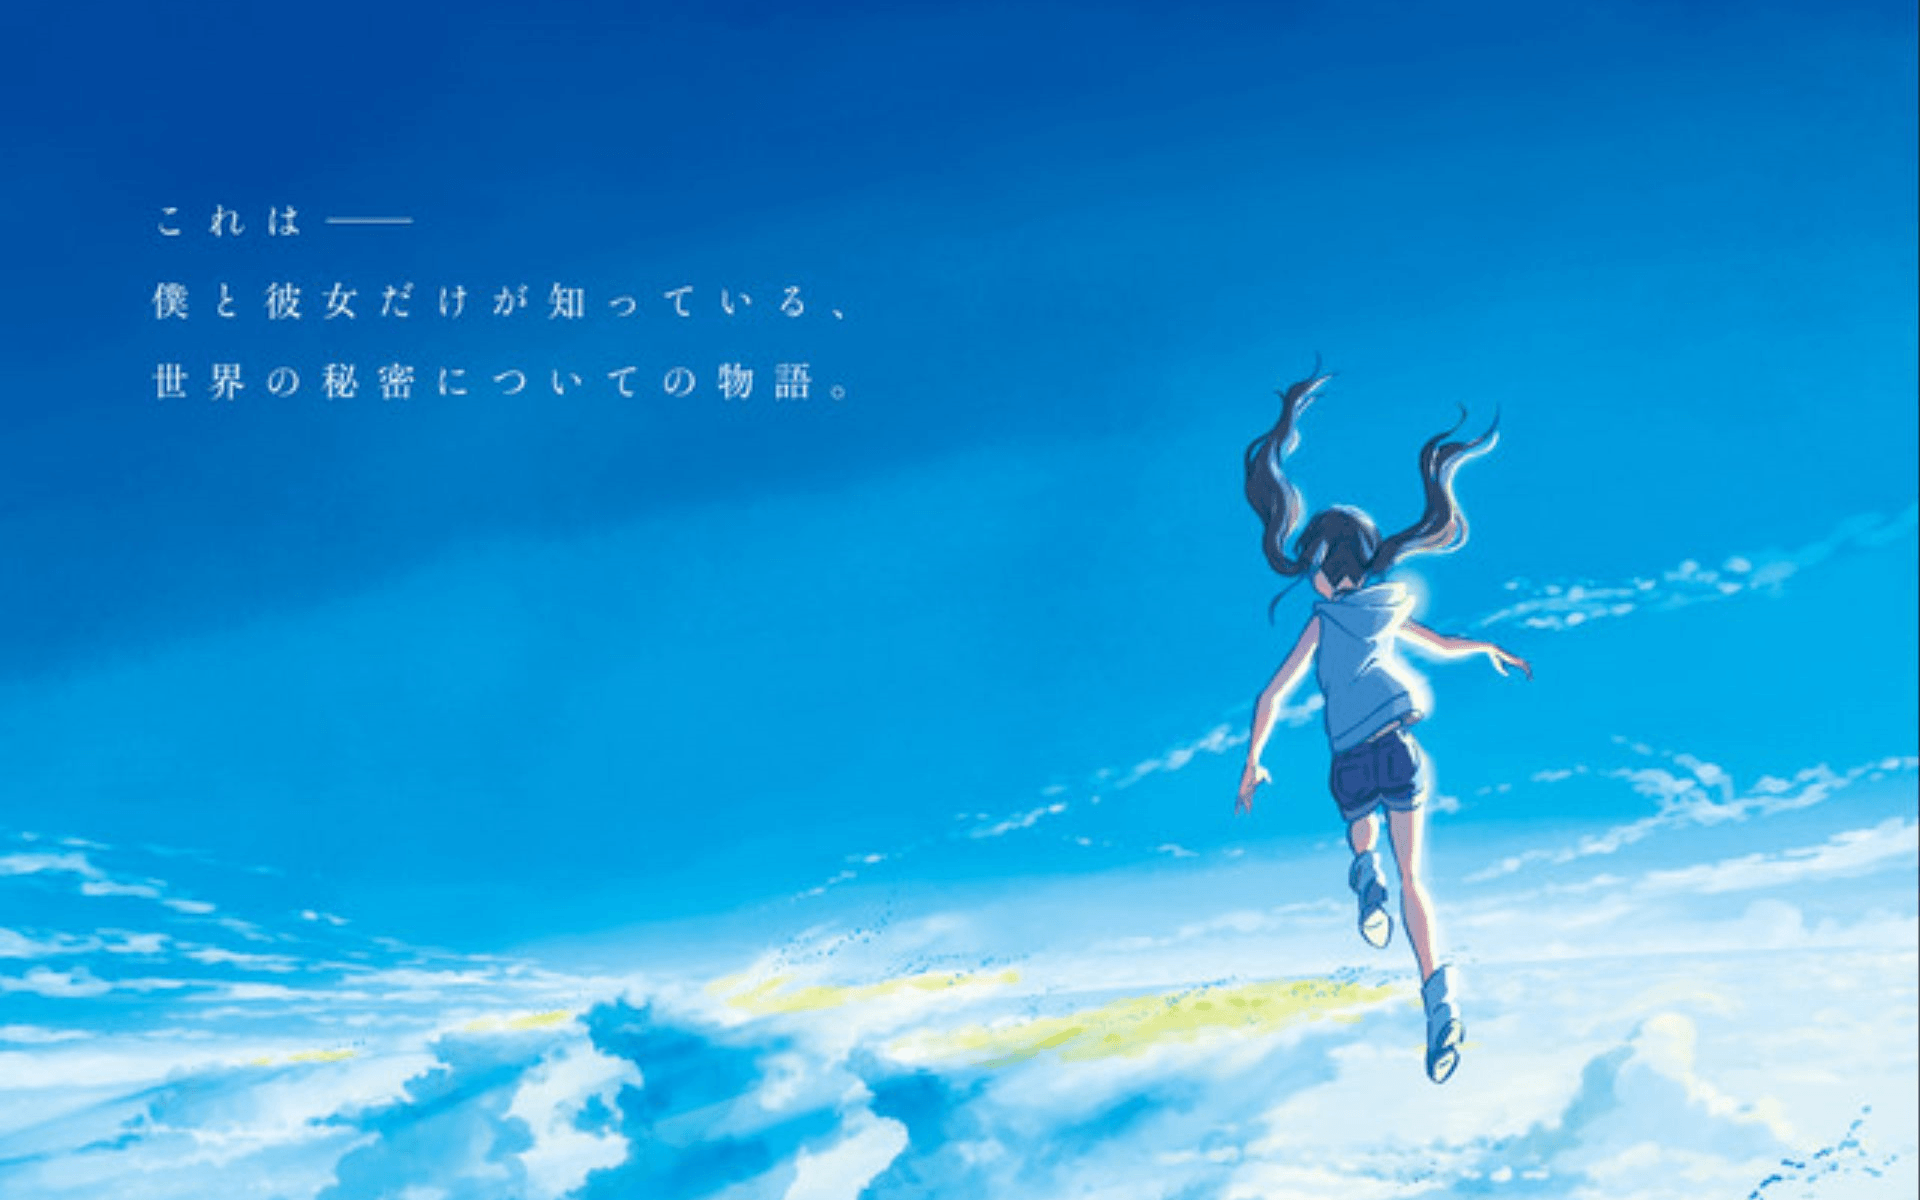 Teaser do novo filme de Makoto Shinkai “Tenki no Ko” é lançado